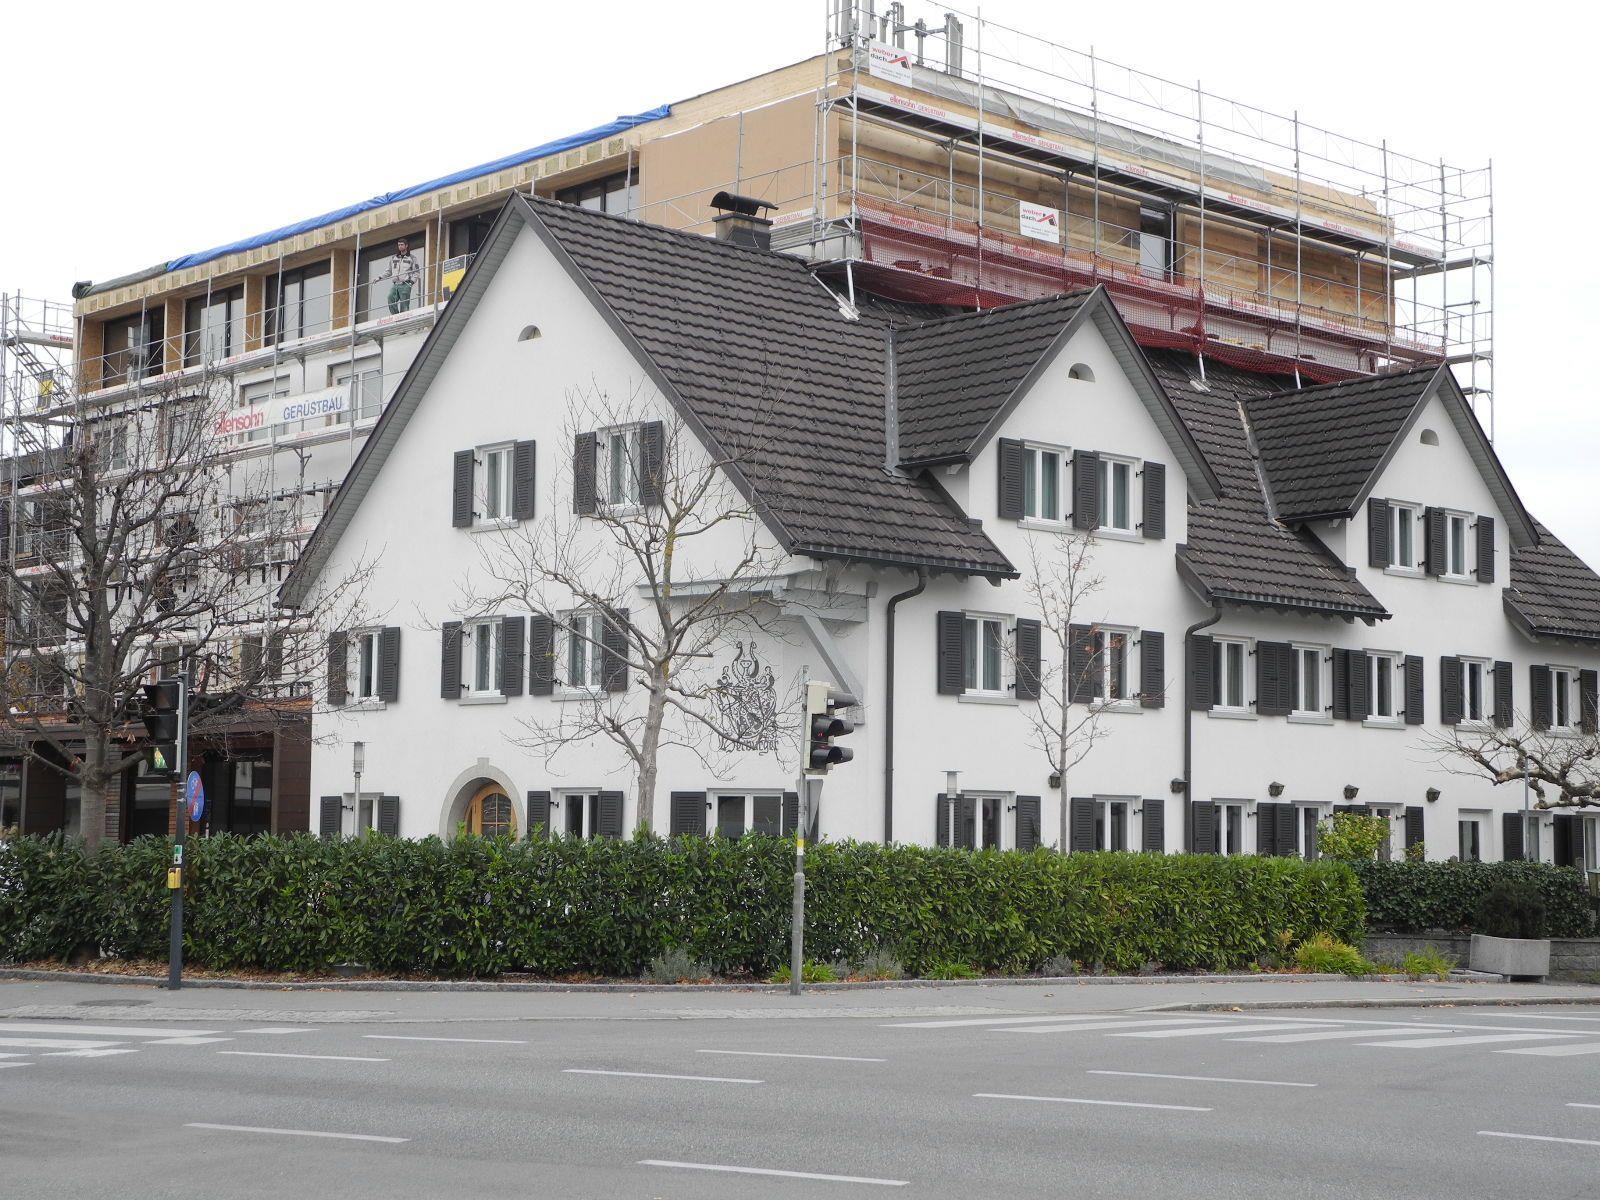 Das Hotel Weisses Kreuz in Altenstadt im Vordergrund der traditionsreiche Altbau